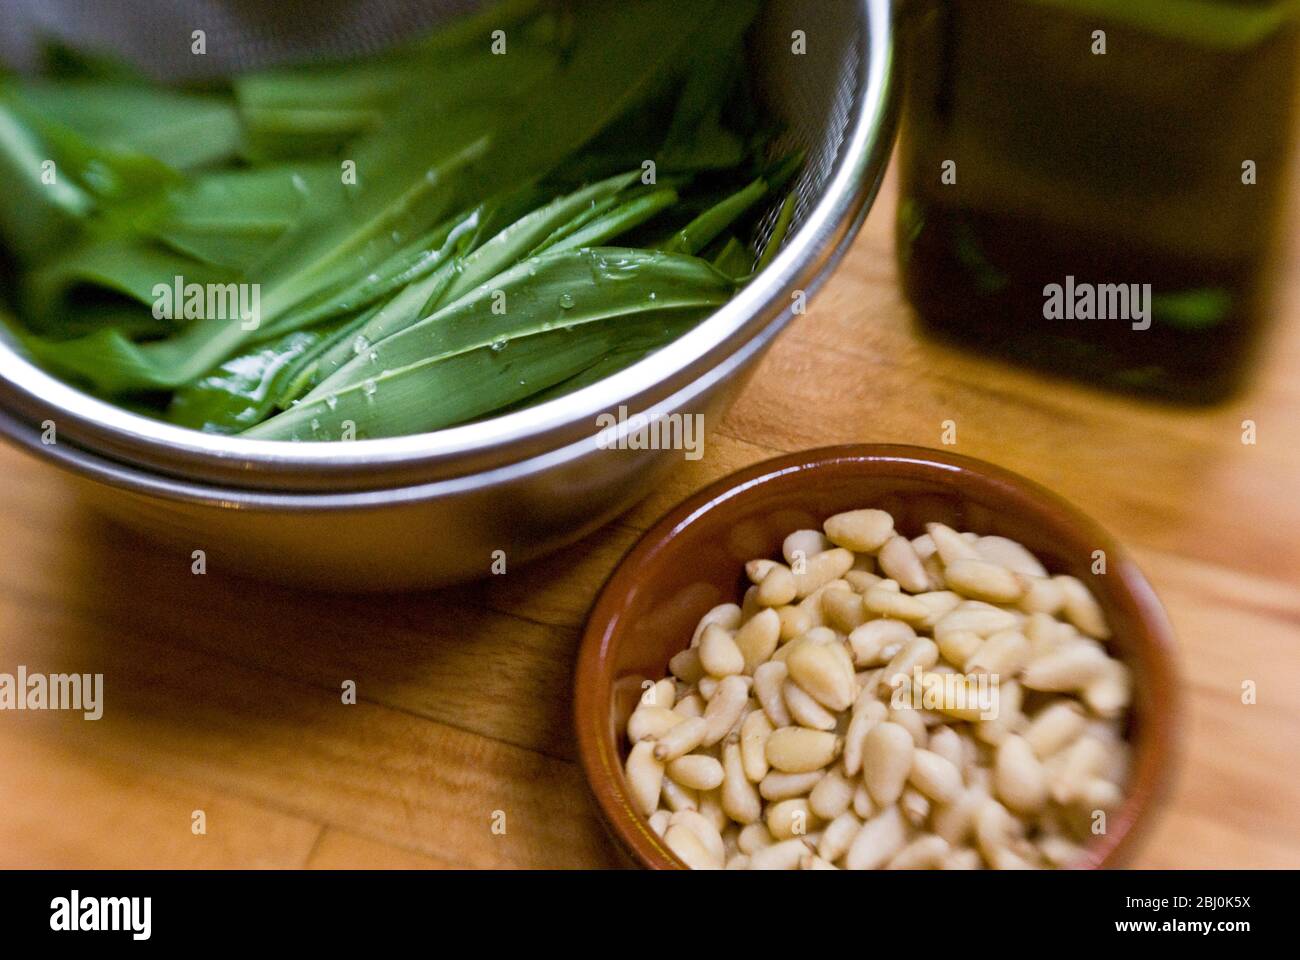 Zutaten für Bärlauch-Pesto, gewaschene Bärlauch-Blätter, Pinenuts in kleiner Schüssel. Aufgenommen mit Lensbaby-Objektiv für unscharfe Kanten. - Stockfoto